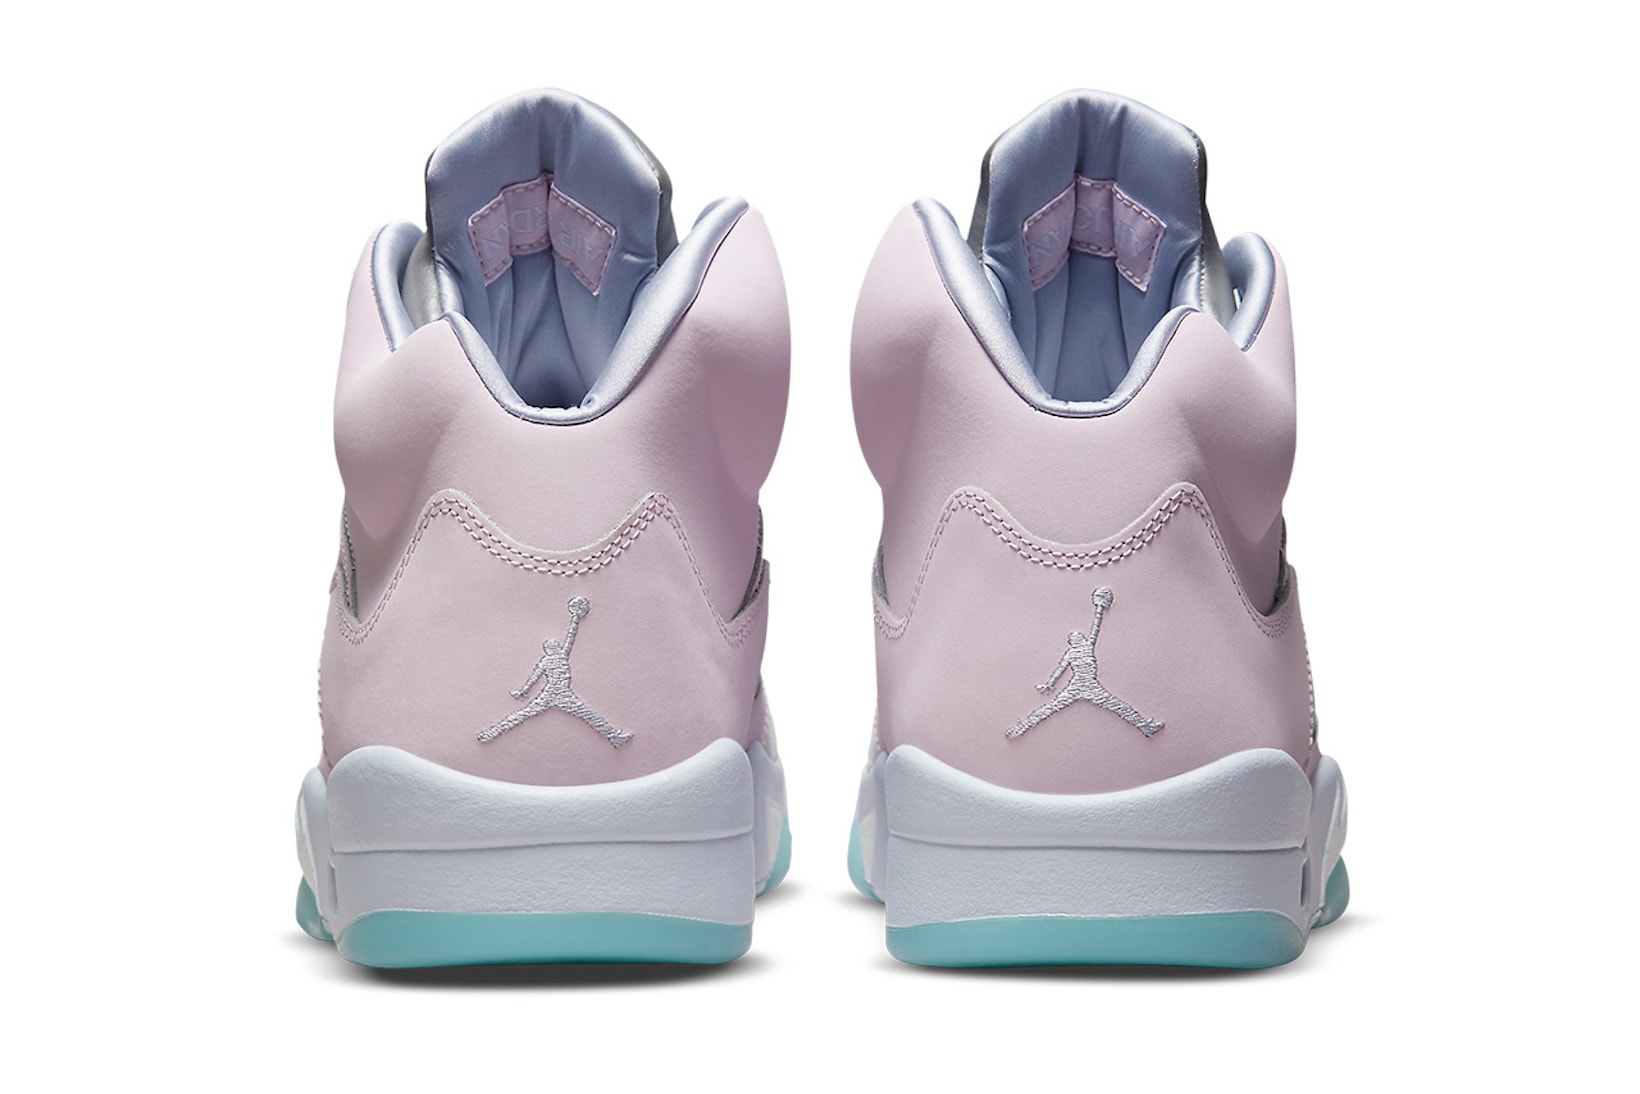 Nike Air Jordan 5 AJ5 Regal Pink Sneakers Footwear Kicks Pastel Purple Blue